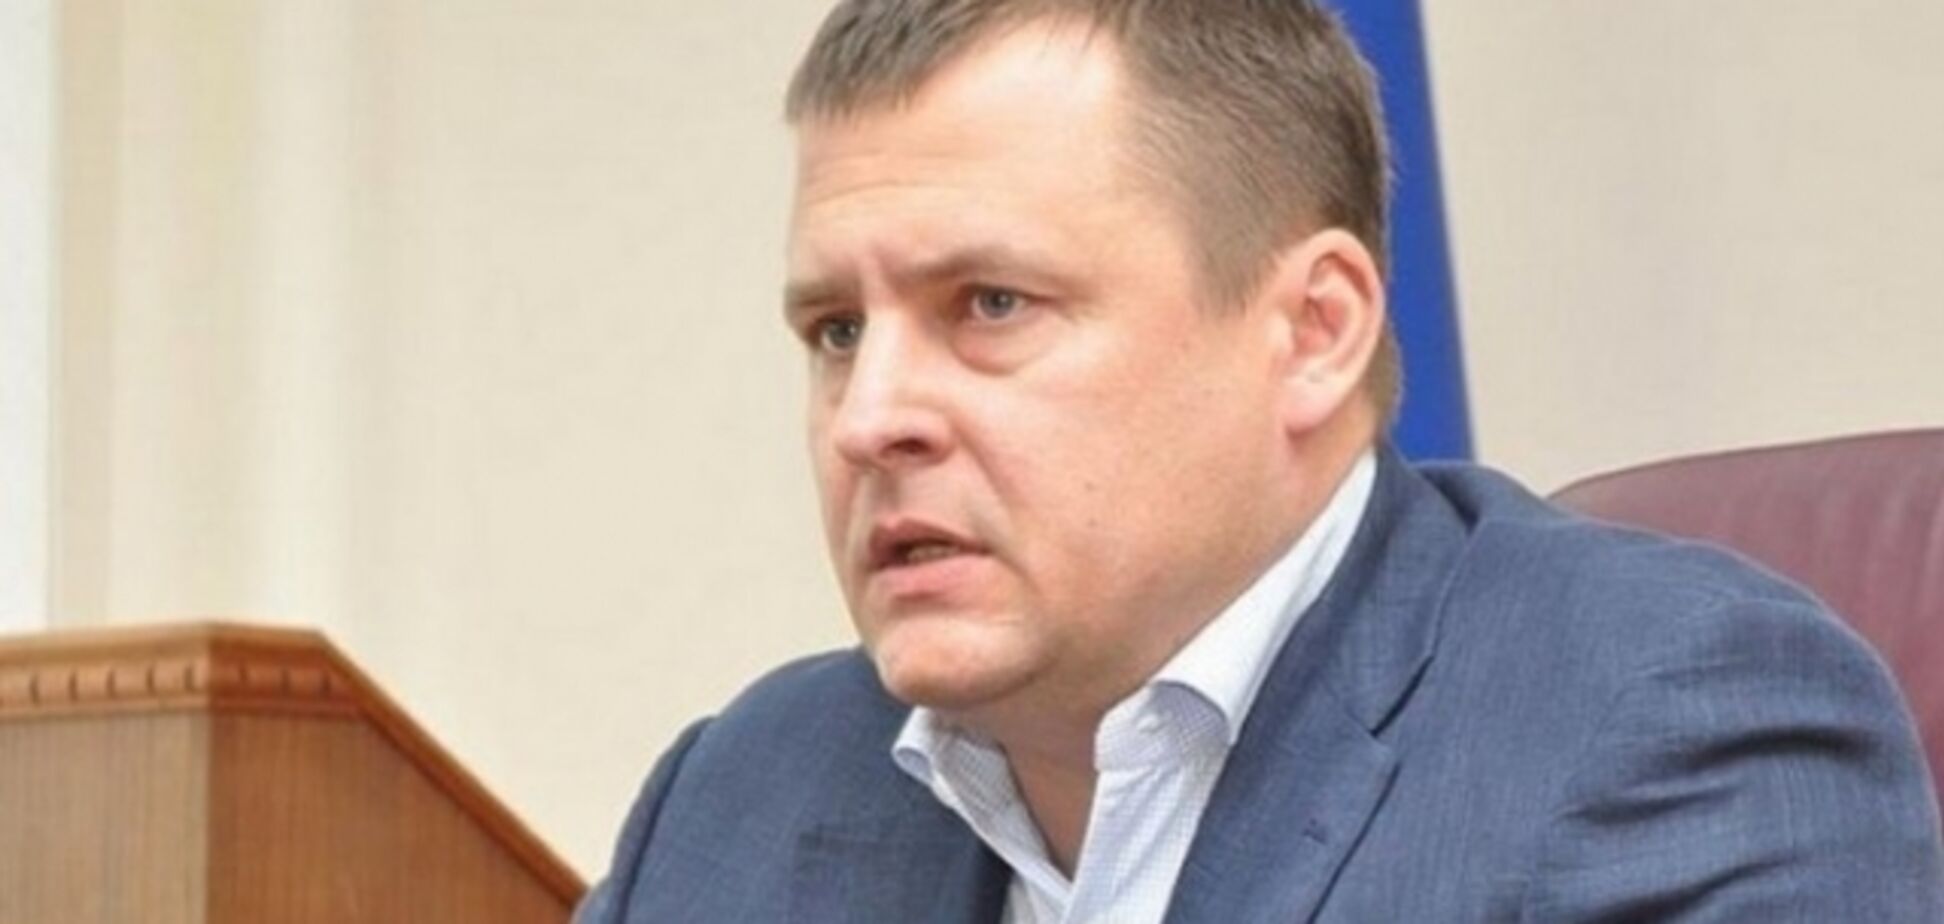 Мэр Днепра хотел бы, чтобы президентом остался Порошенко